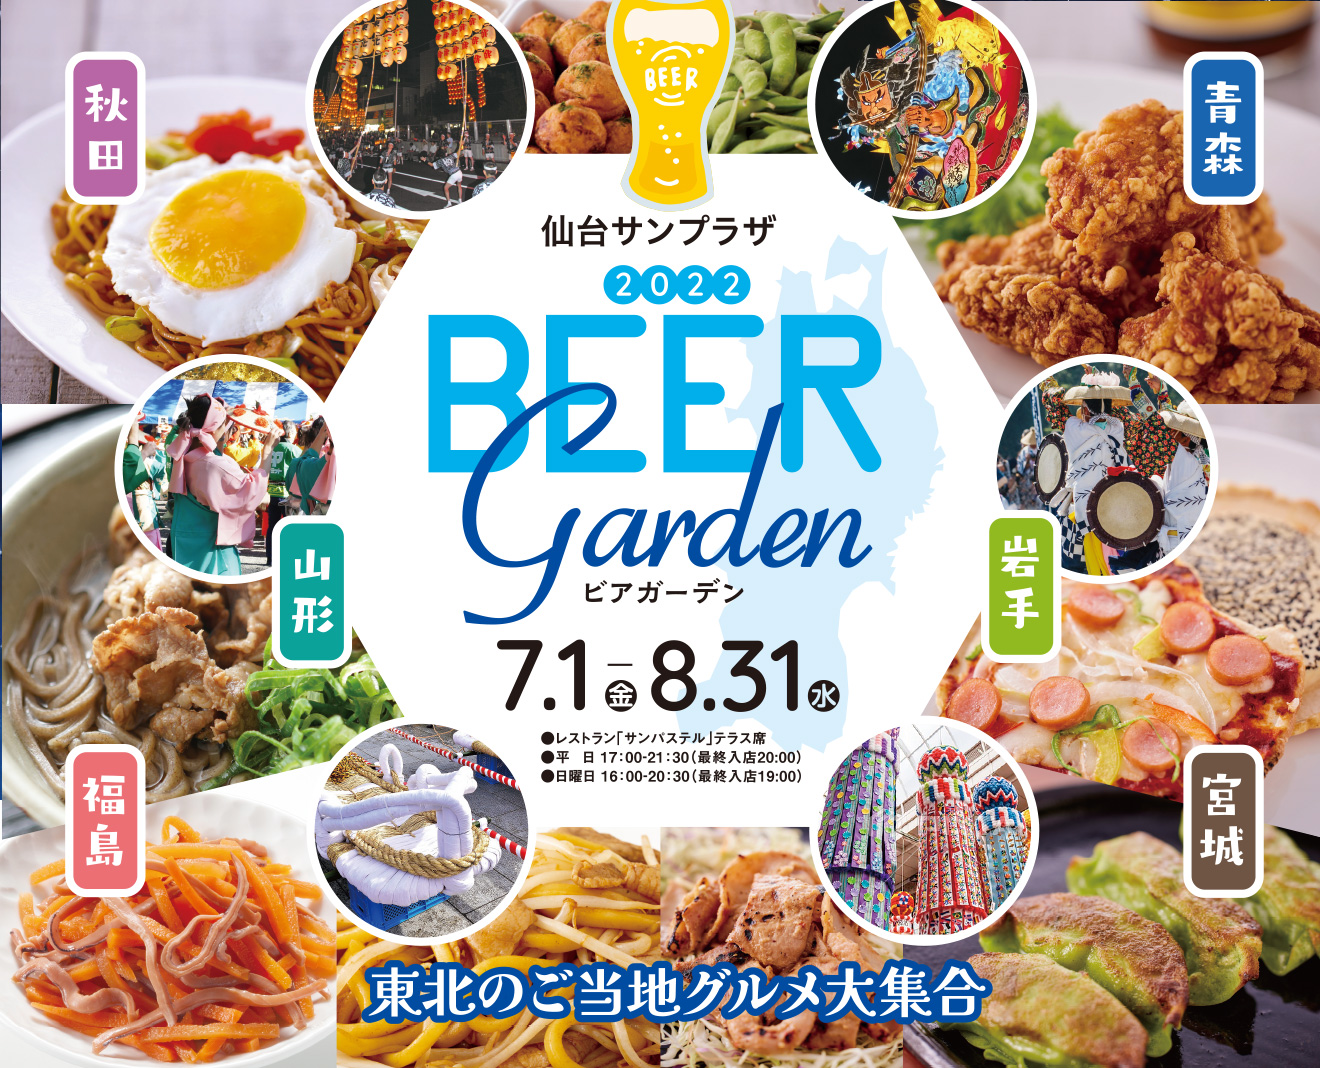 お好きなスタイルで楽しめる Beer GARDEN 2020 | 7.1 WED 〜 9.30 WED